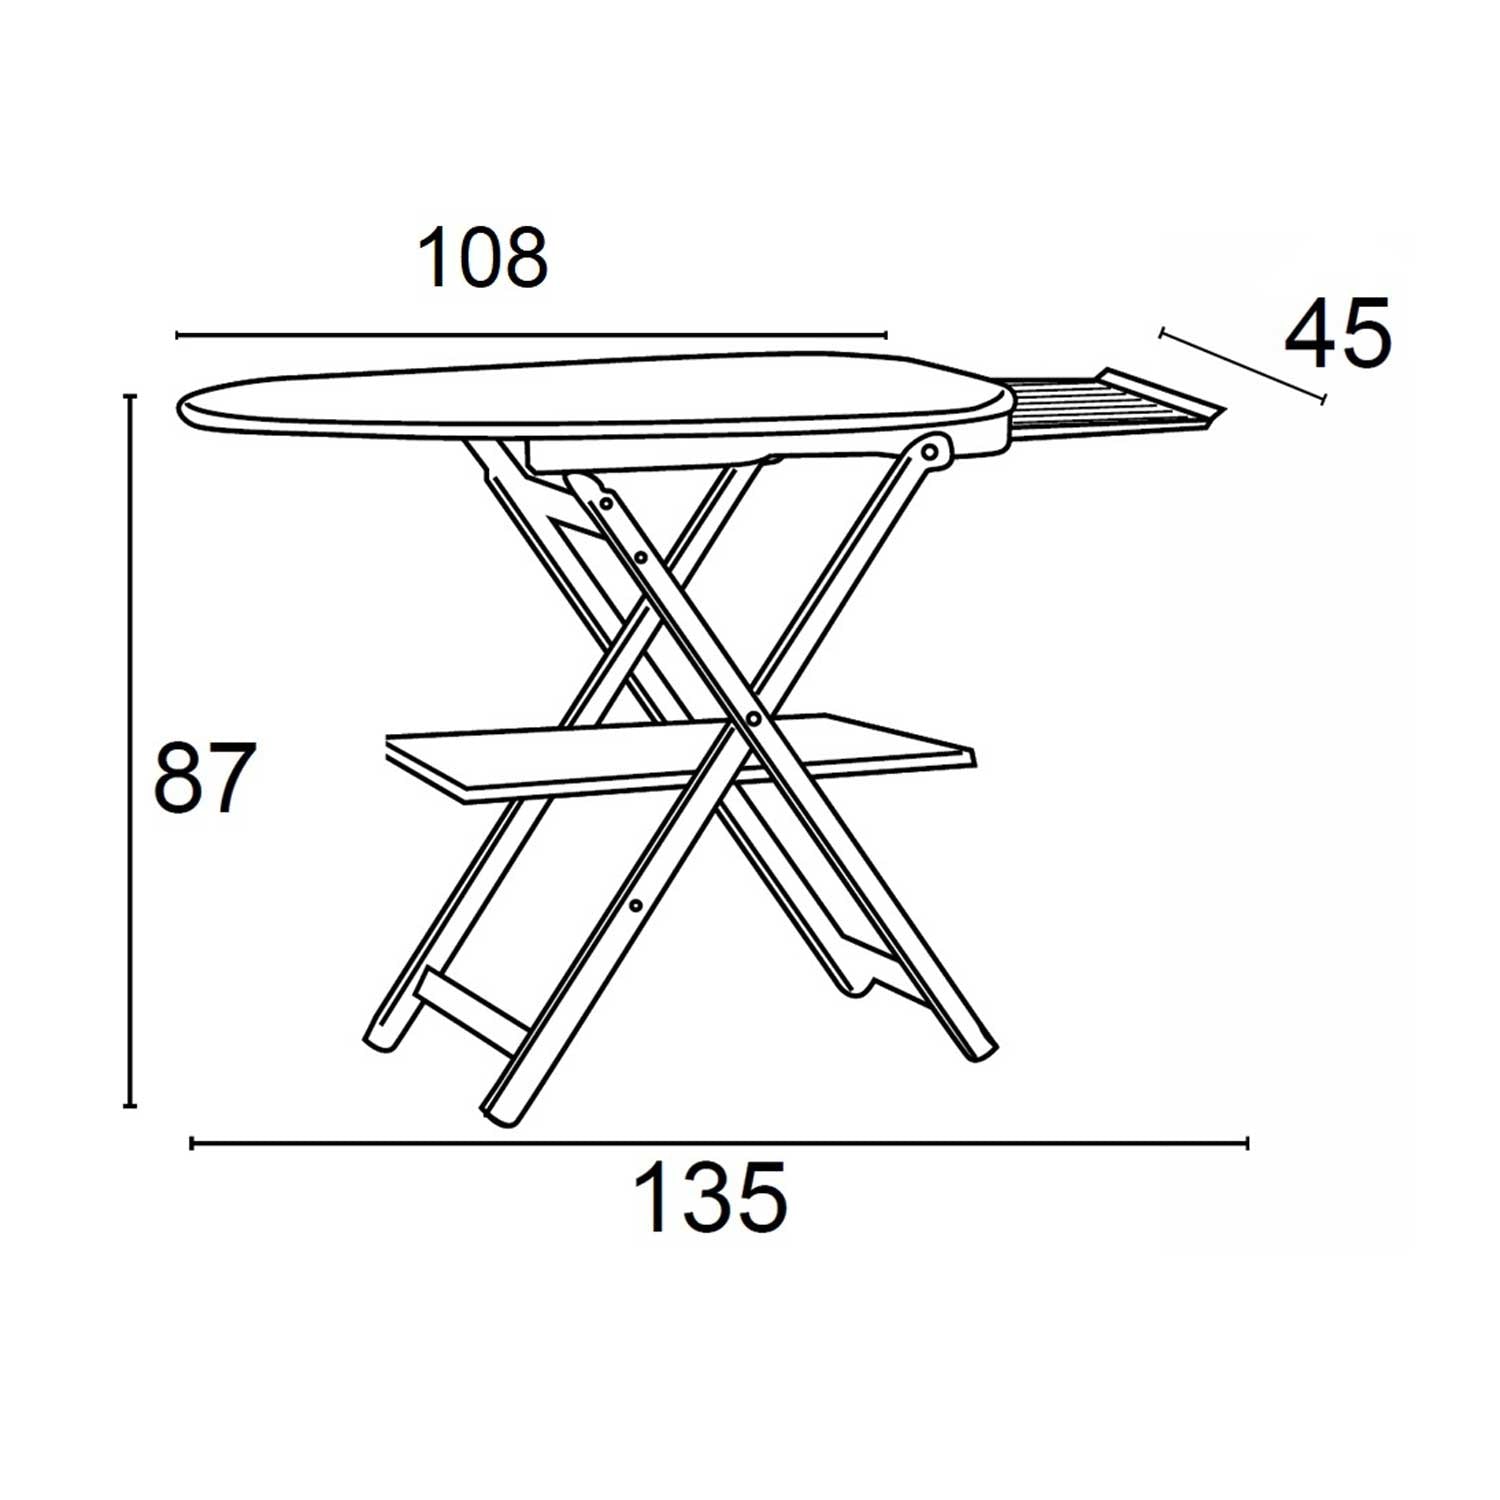 Table à repasser ASTIR, hauteur du plan de travail 87 cm, pieds à la base, repose-fer coulissant - couleur cerise, ARIT, 1